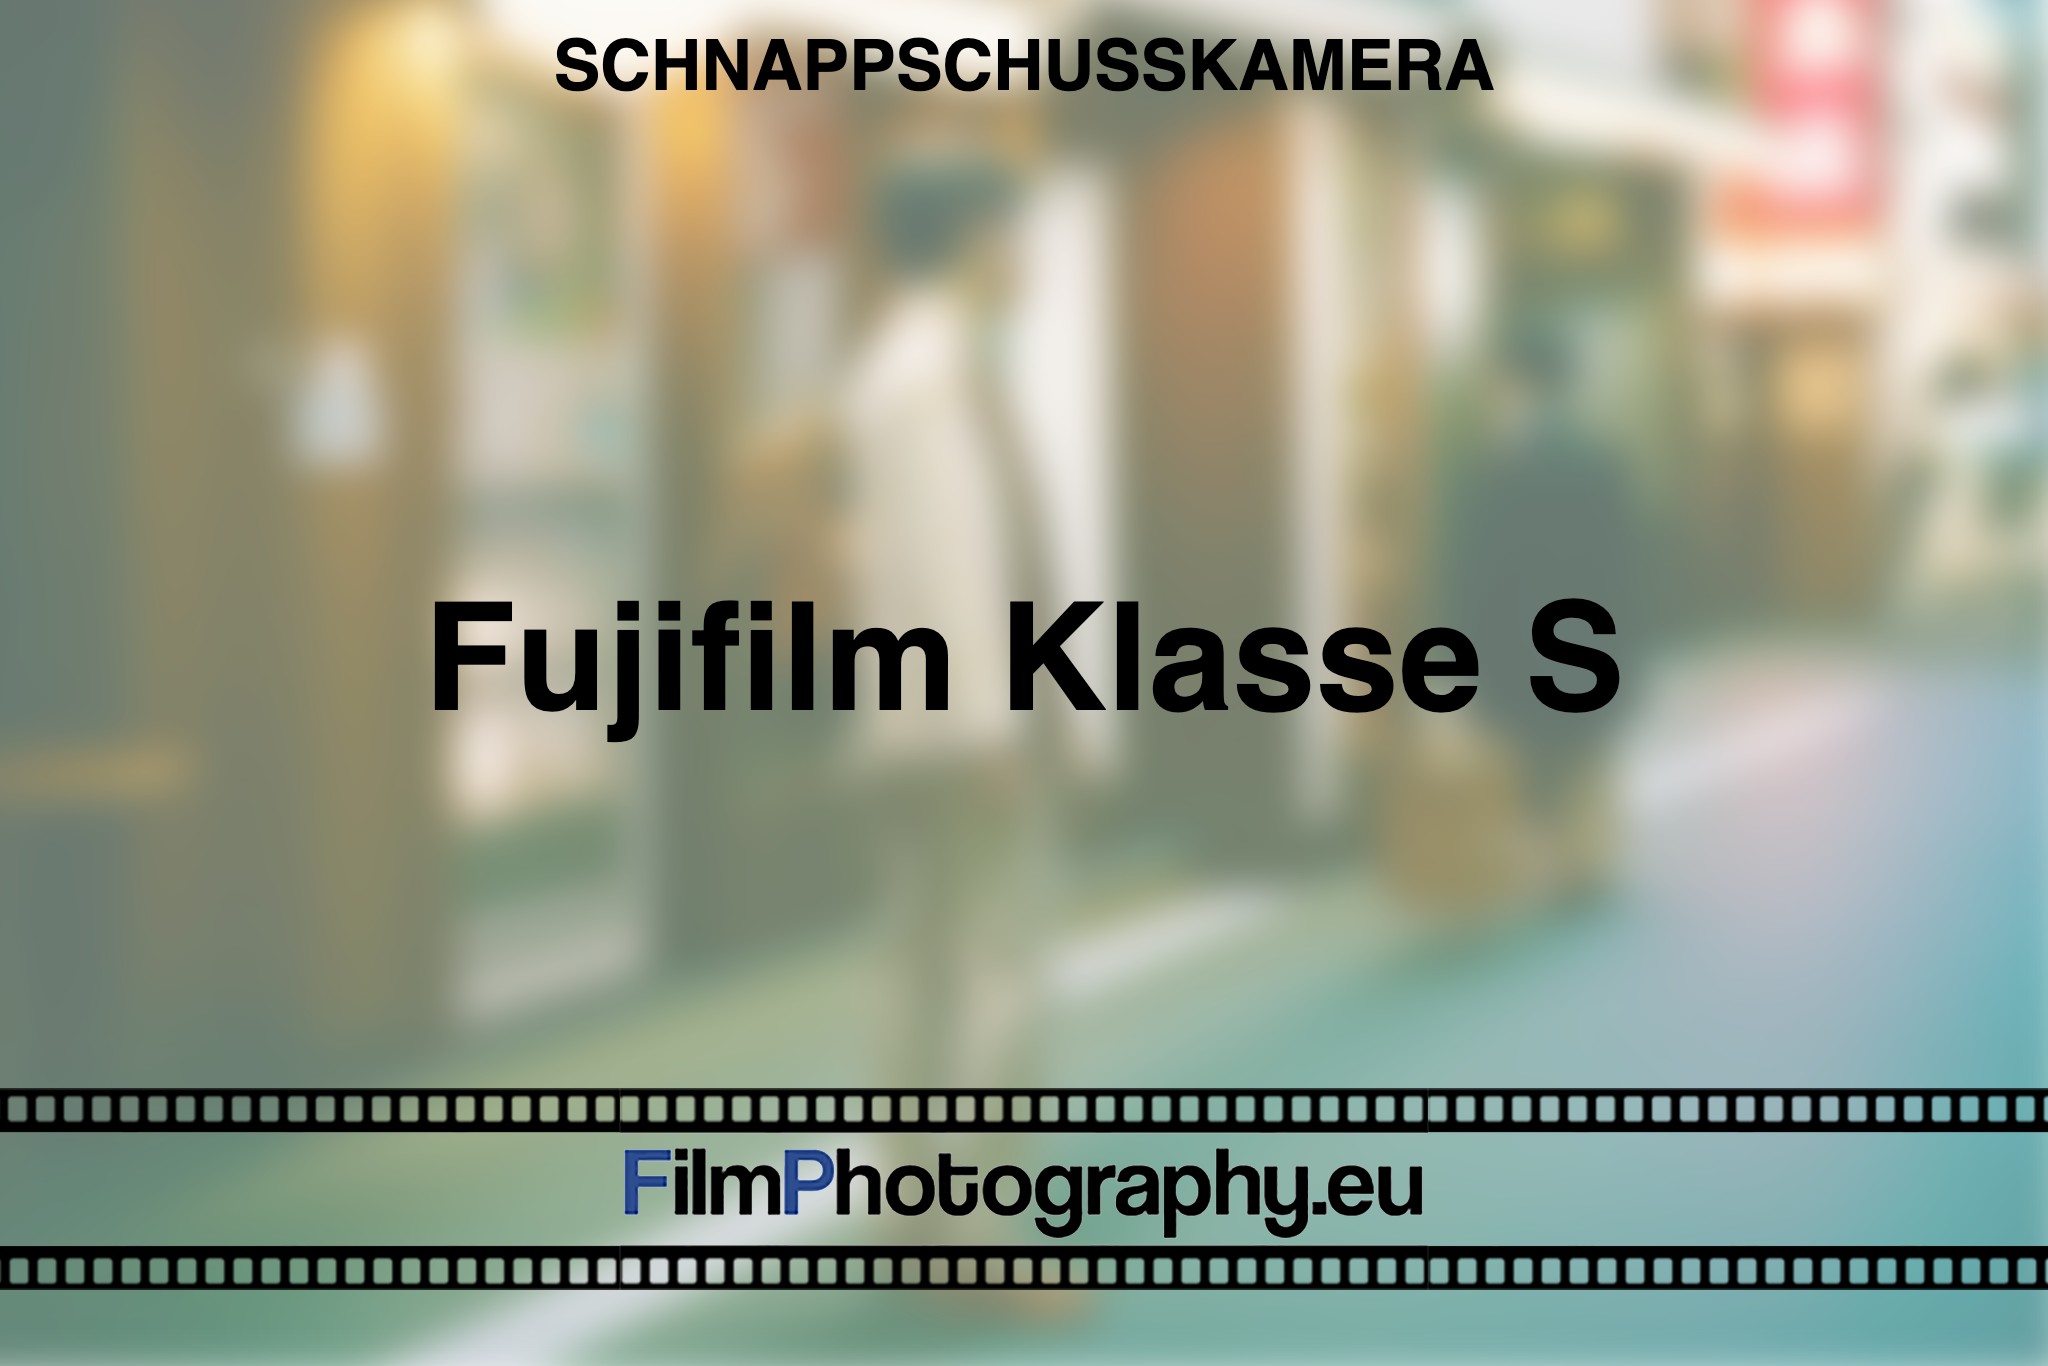 fujifilm-klasse-s-schnappschusskamera-bnv